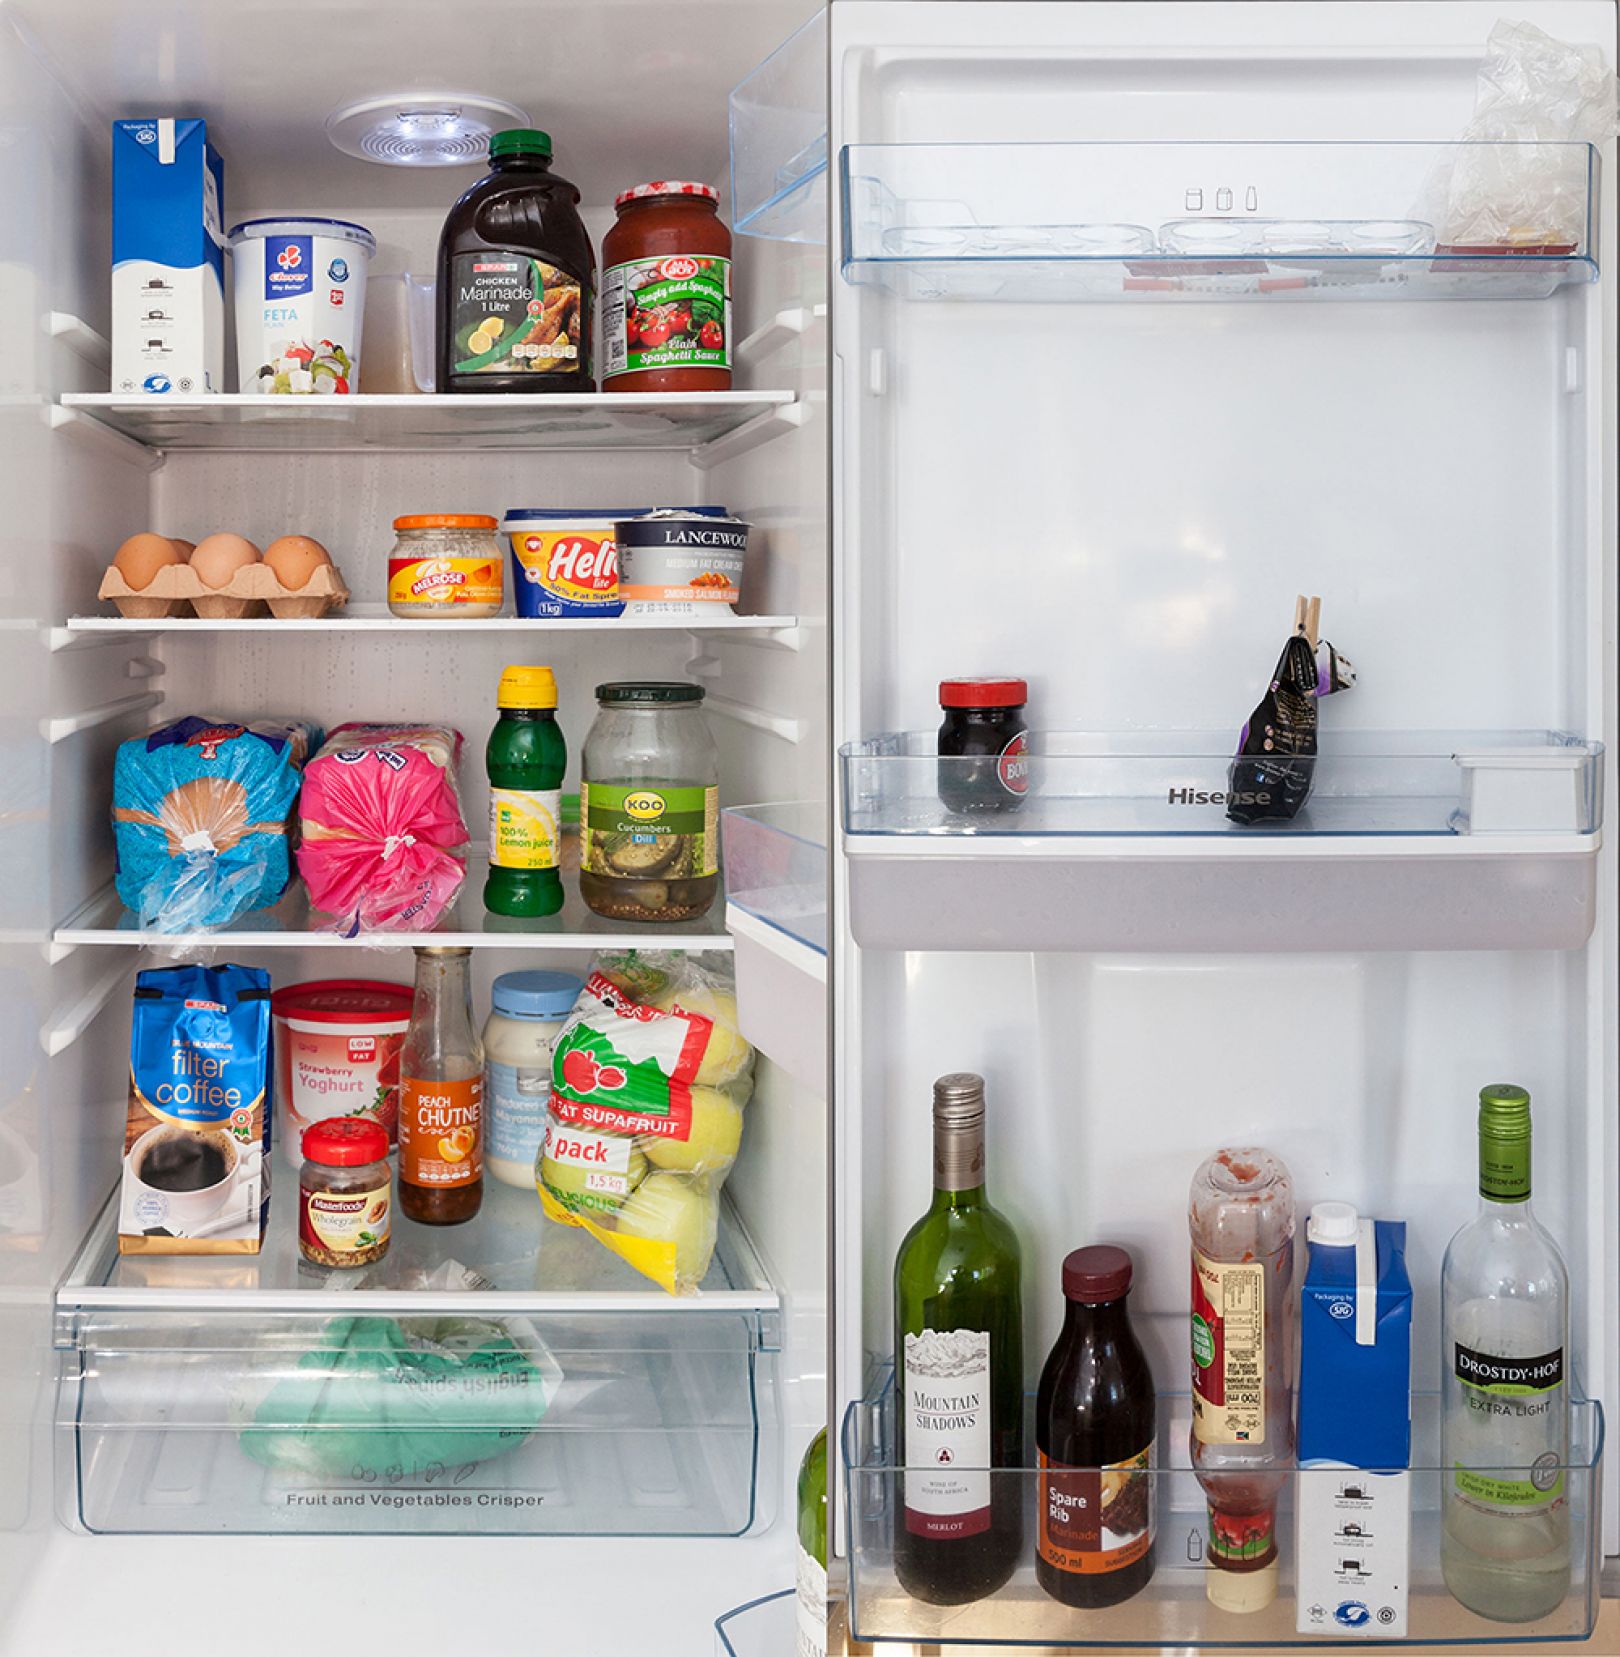 Show Me Your Fridge: Sandra Junker's photographic document of fridges ...